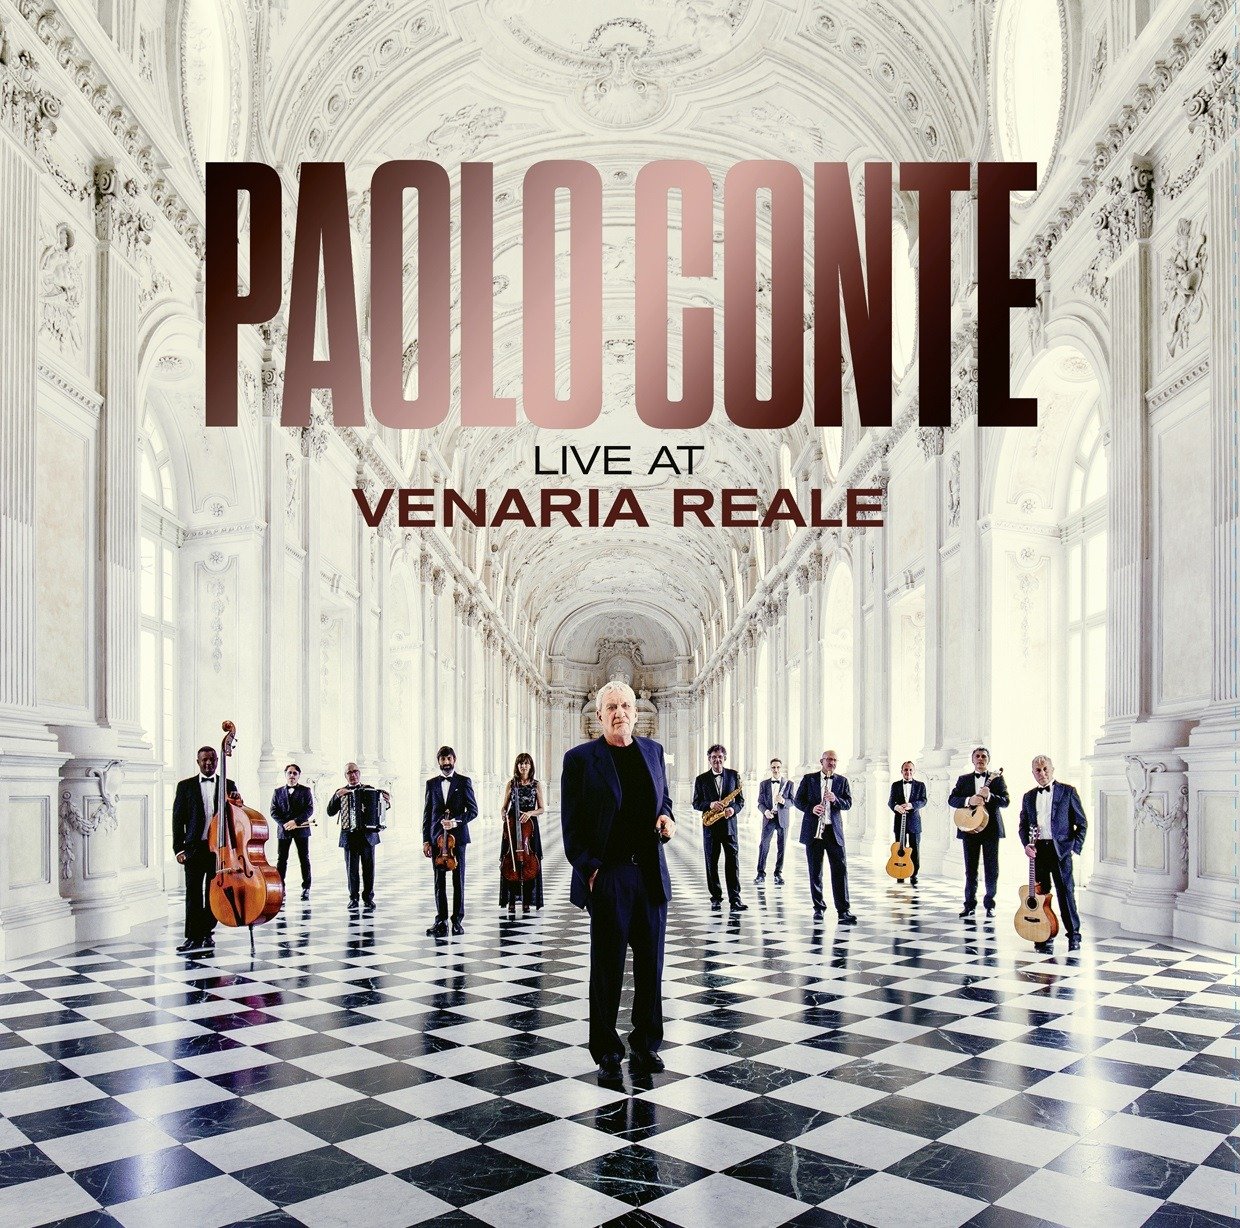 CONTE, PAOLO - LIVE AT VENARIA REALE (CRYSTAL VERSION), Vinyl